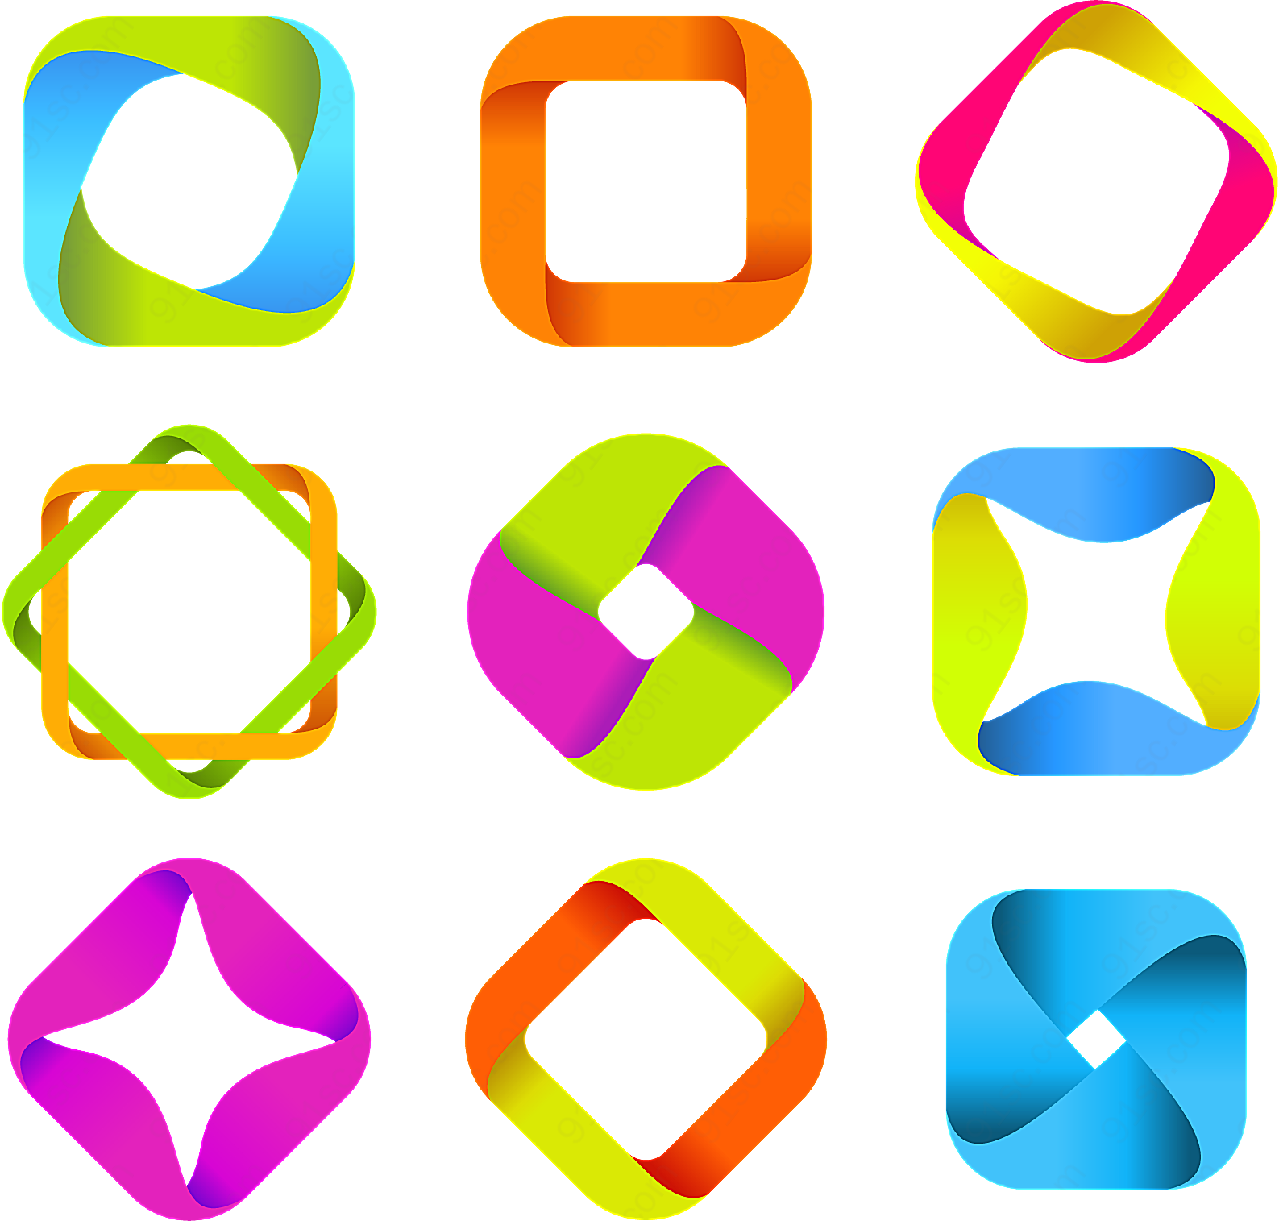 错觉抽象符号矢量logo图形